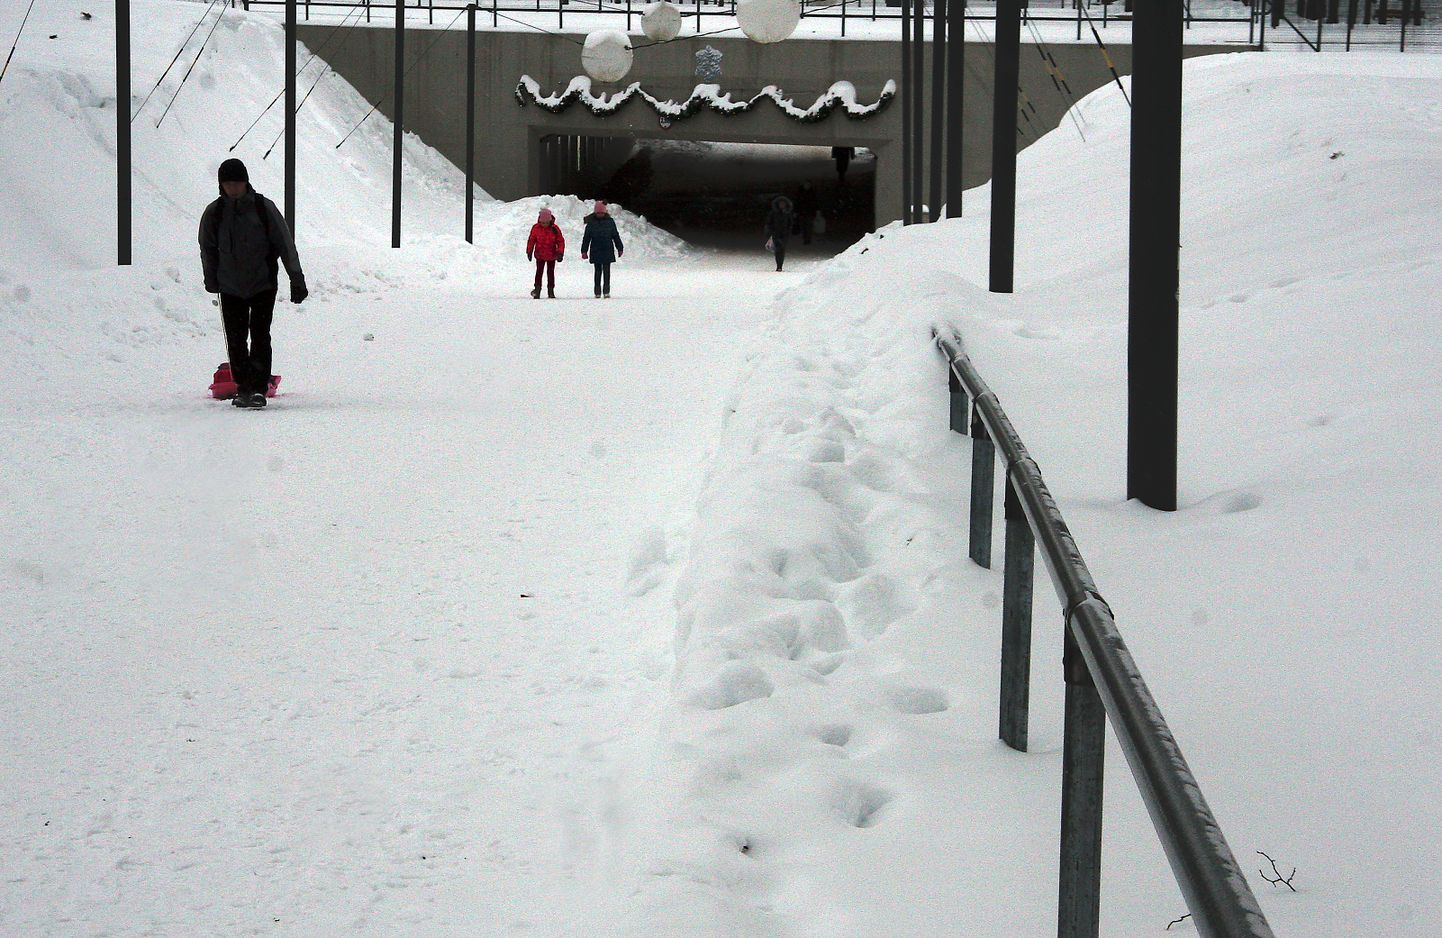 У расположенного на променаде пешеходного туннеля пешеходные дорожки расчищены так, что перила местами тонут в снегу и снежный вал мешает пользоваться ими.